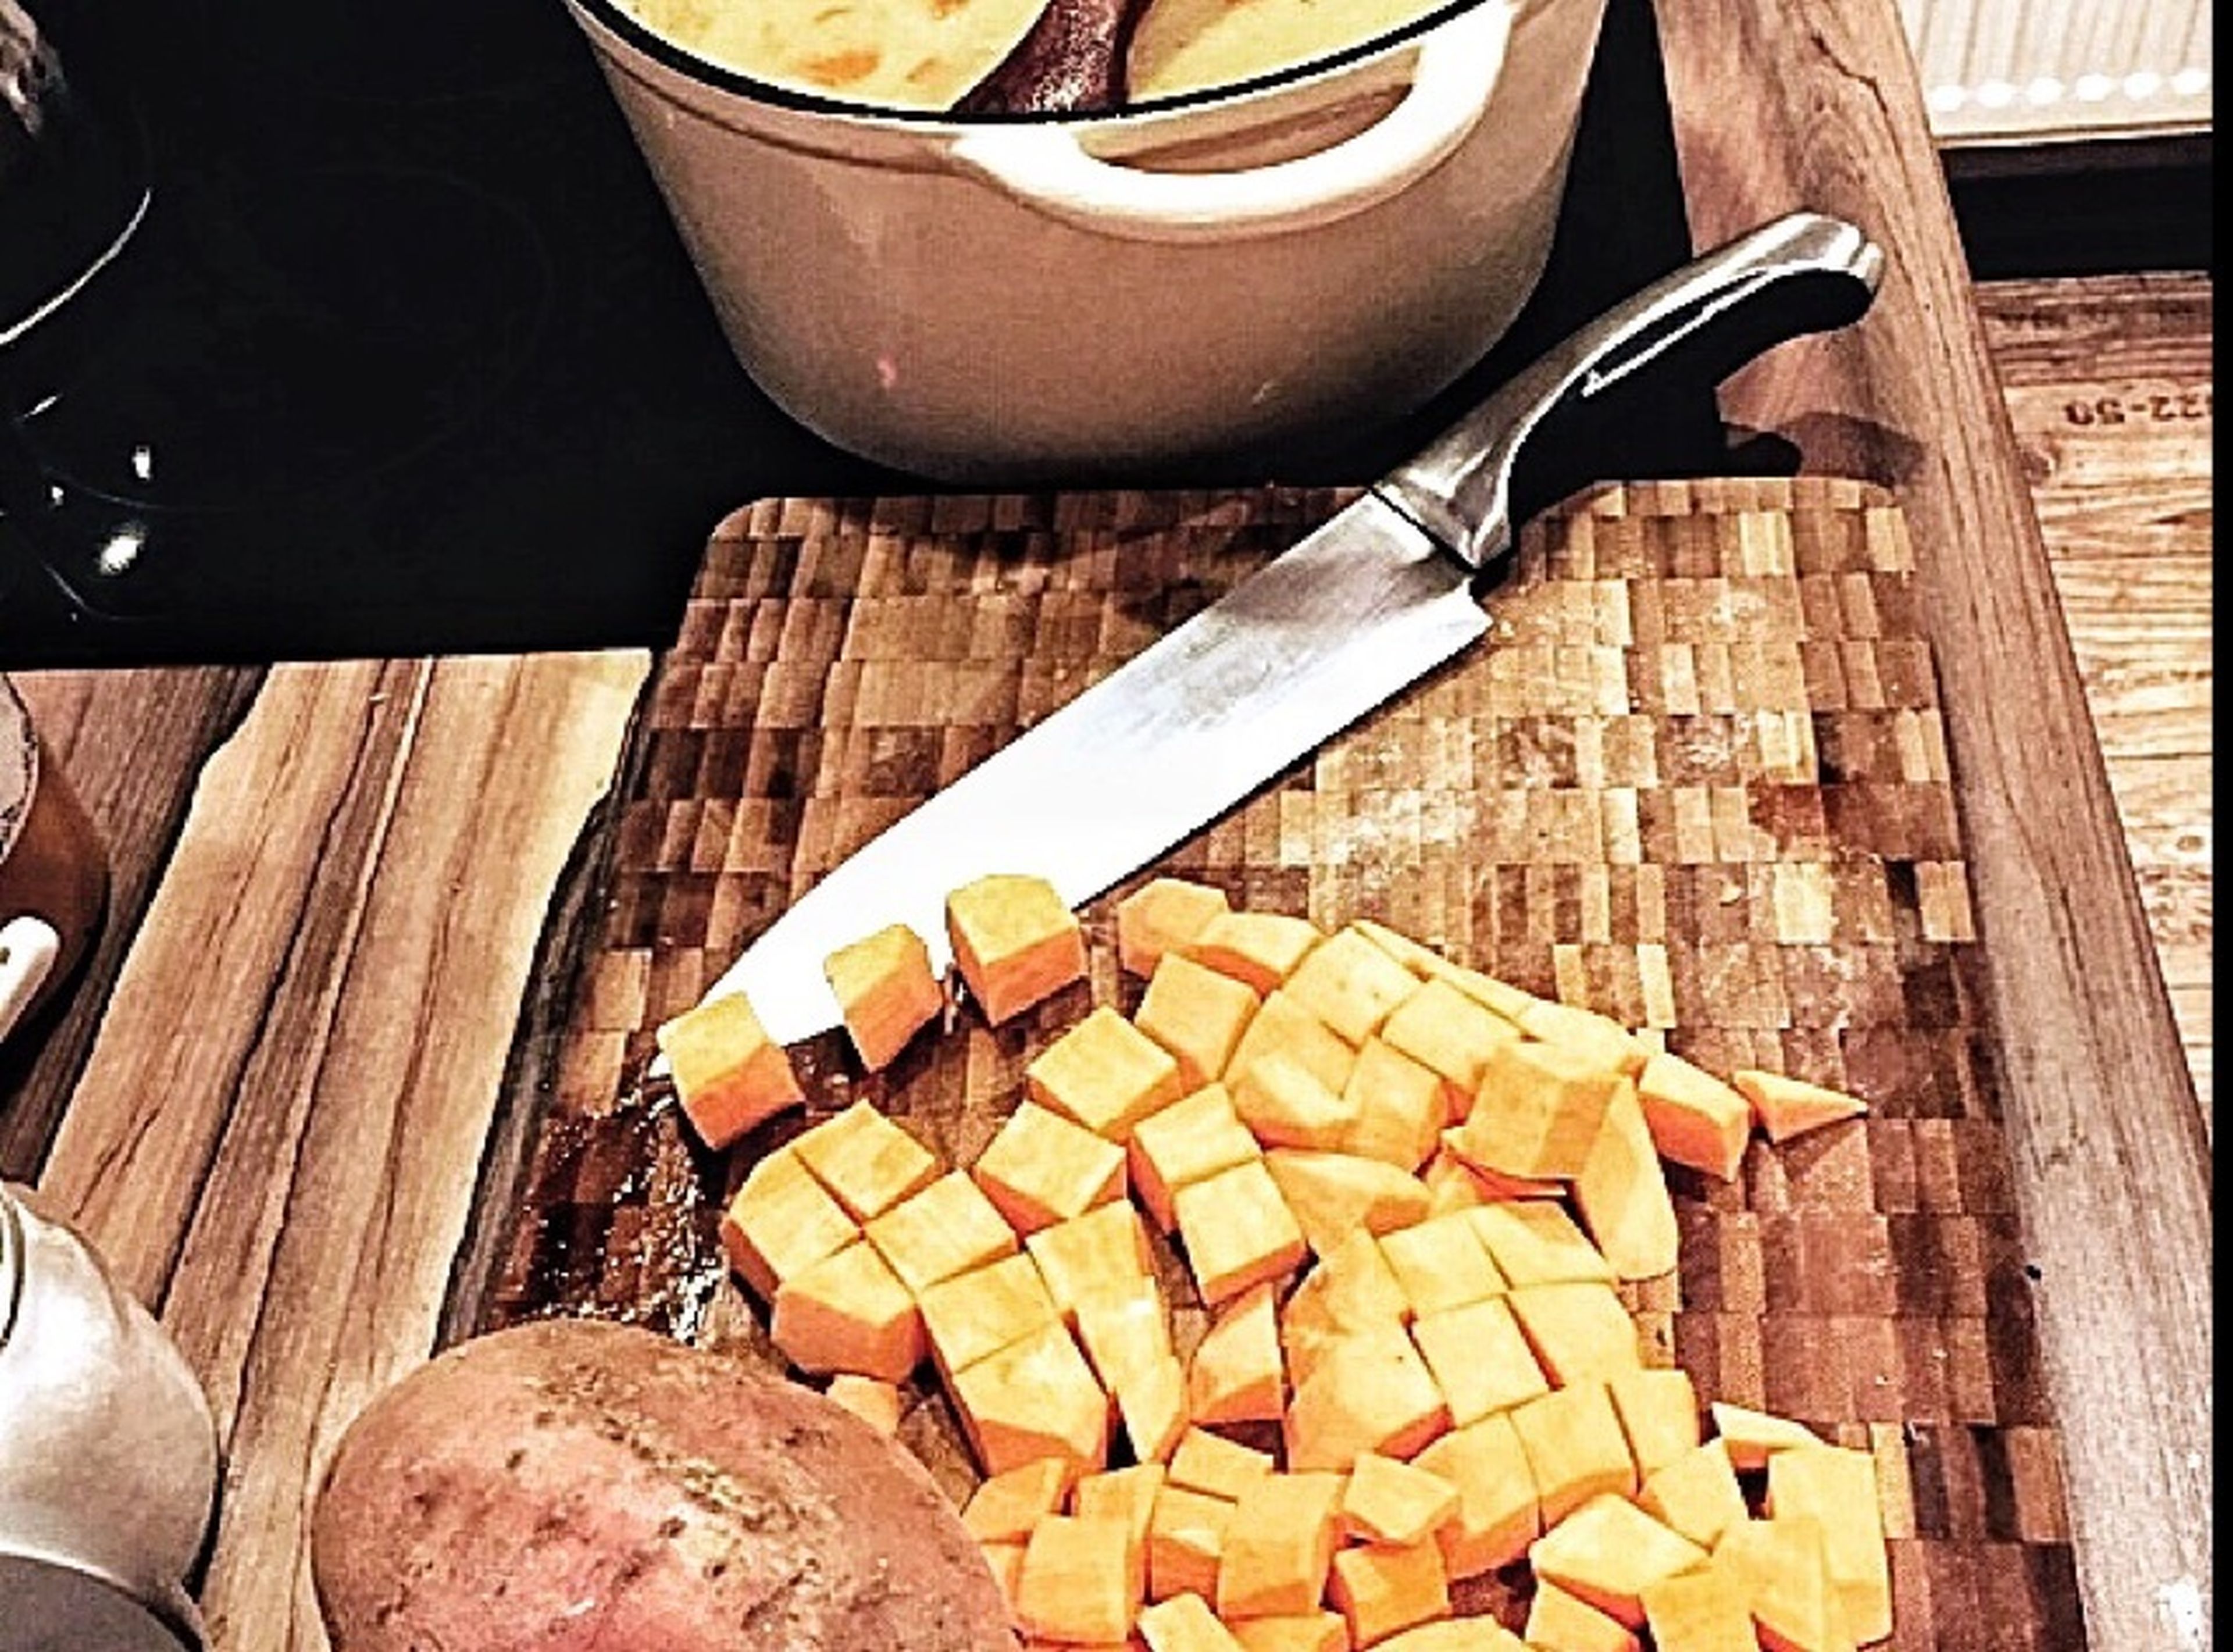 Karotten und Süßkartoffeln schälen. Karotten in Scheiben schneiden, Süßkartoffeln klein würfeln.